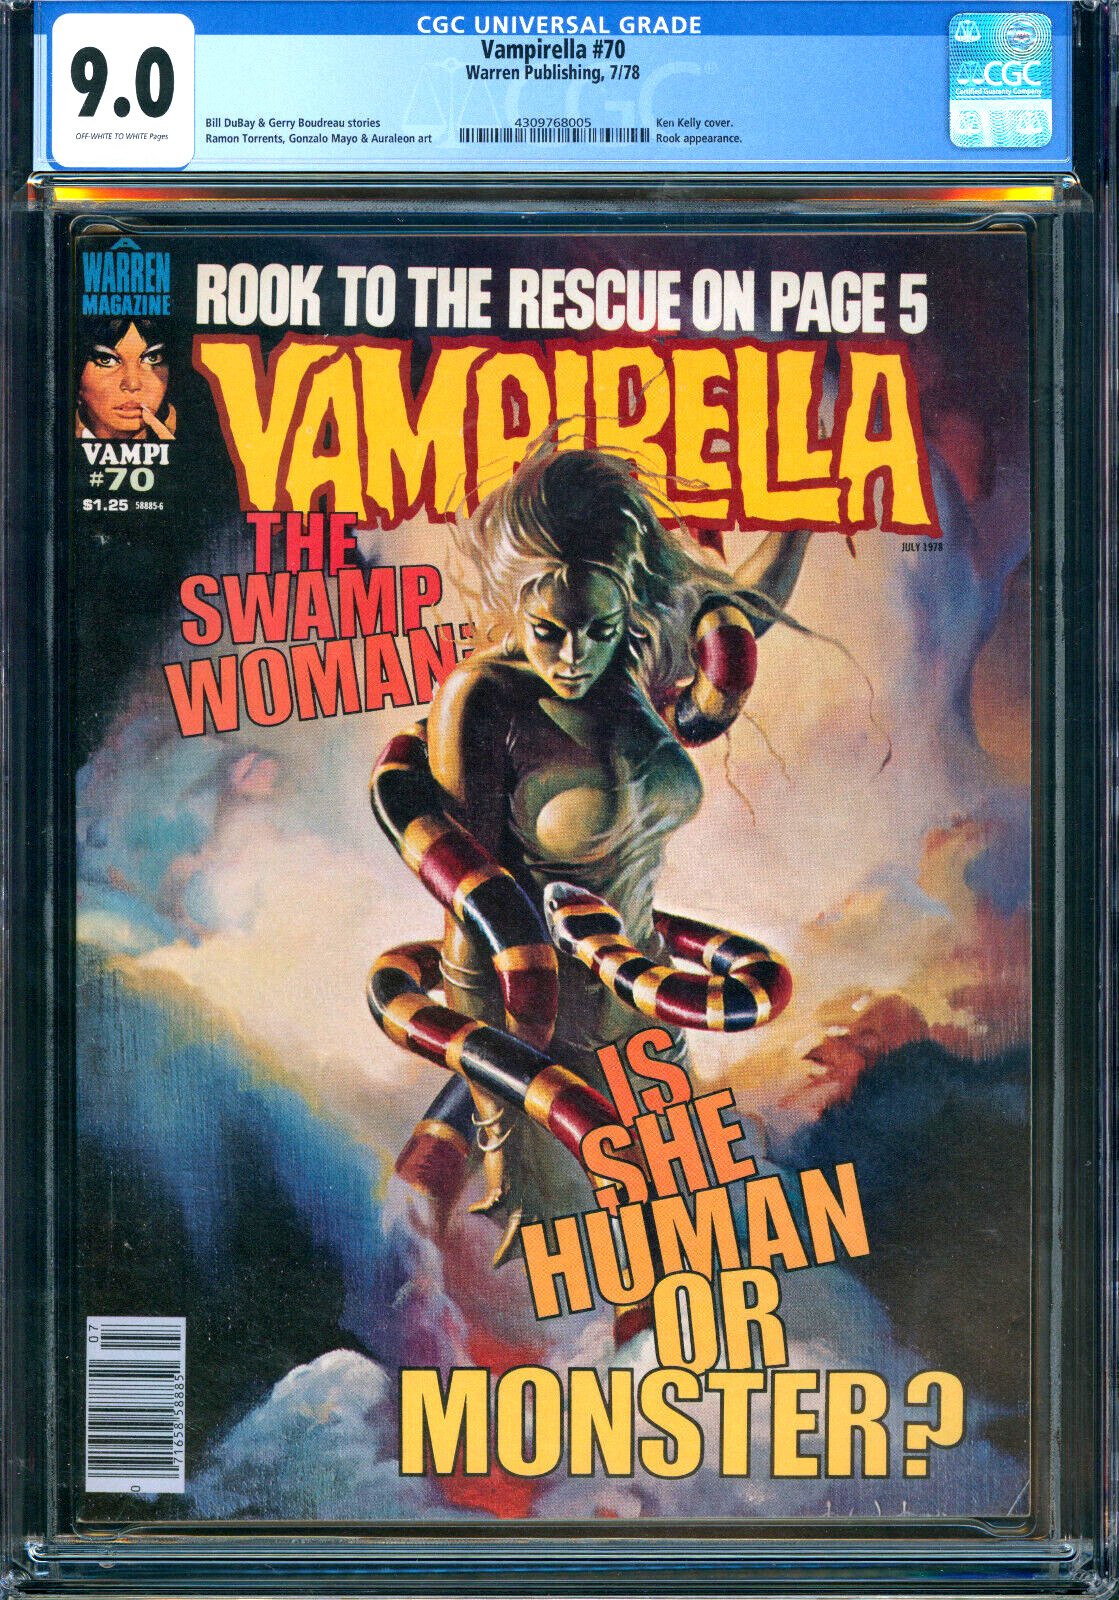 Vampirella #70 Ken Kelly Cover Warren Publishing 1978 CGC 9.0